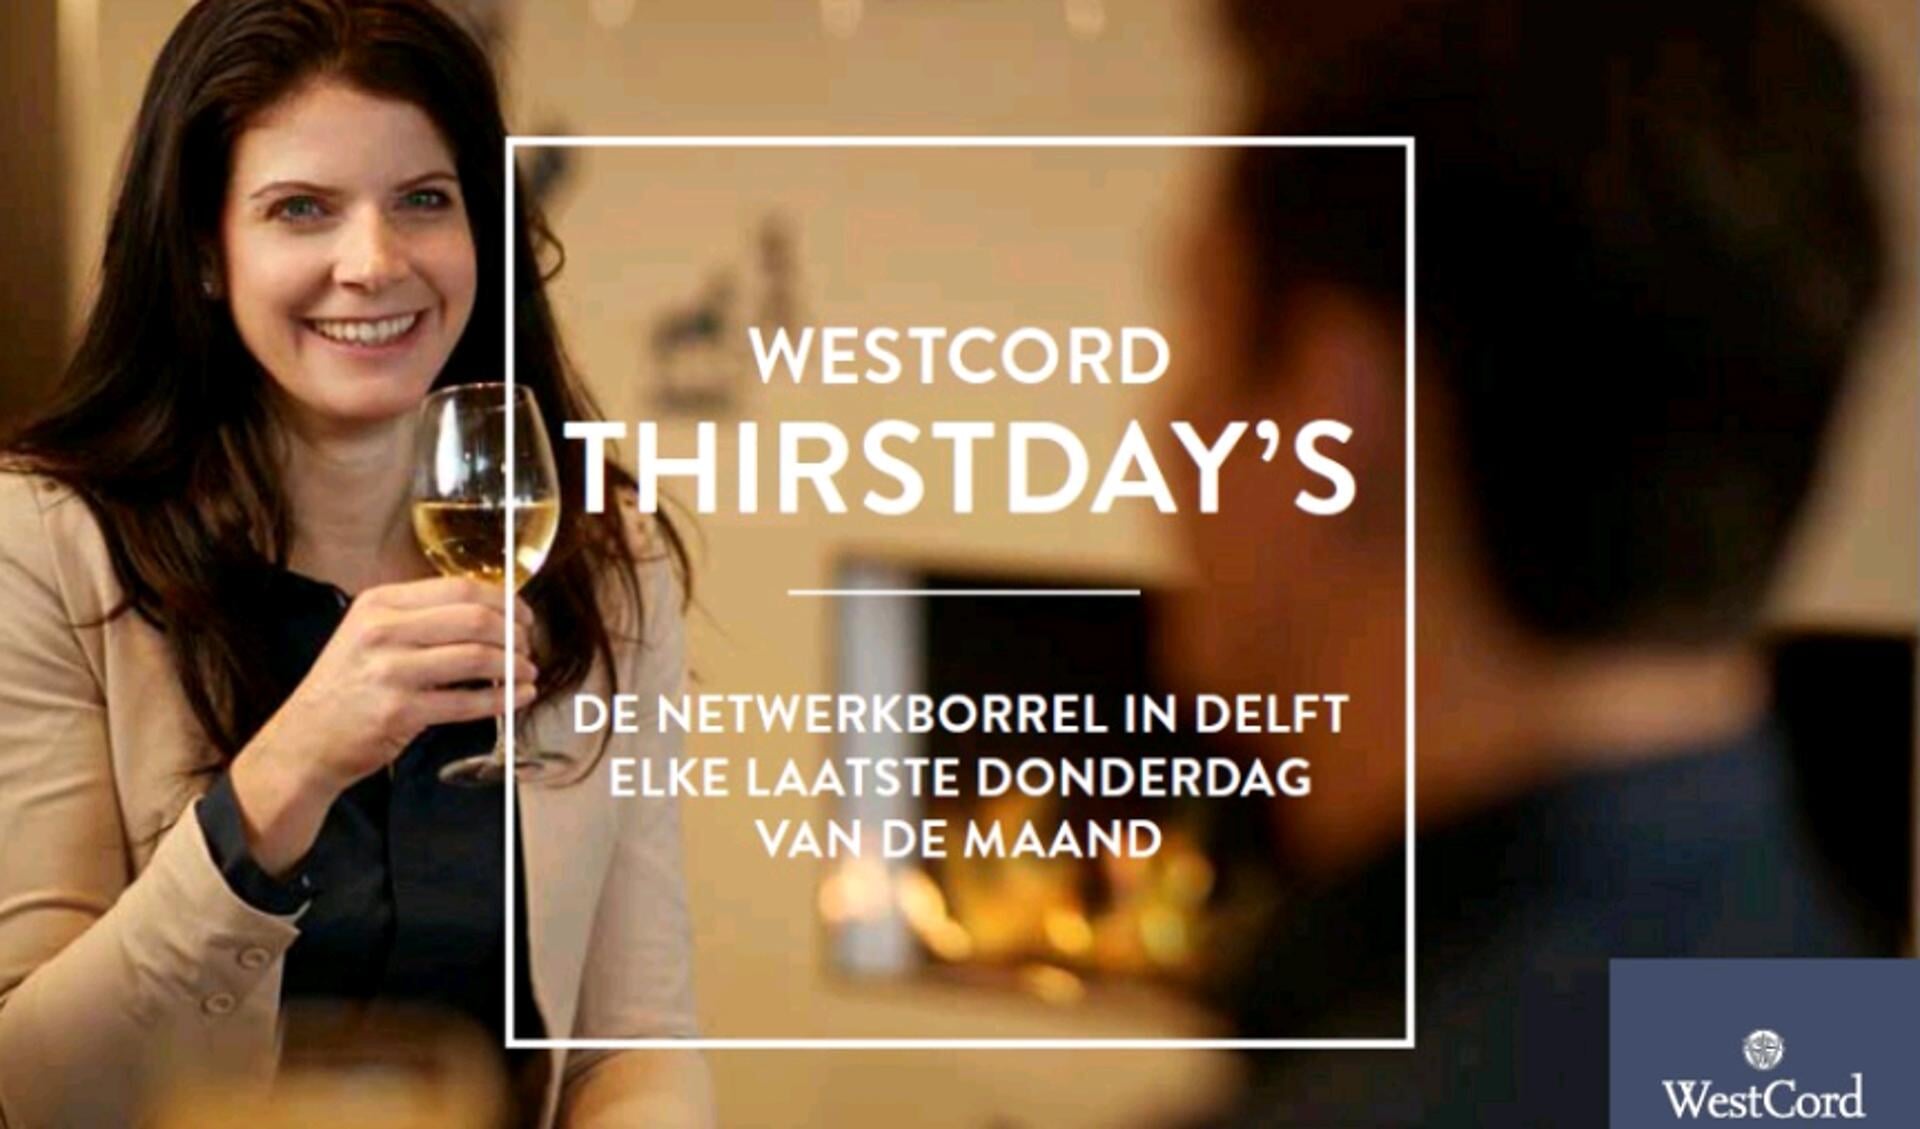 Elke laatste donderdag van de maand, van 17:00 uur tot 20:00 uur, organiseert WestCord Hotel Delft de 'WestCord ThirstDays'.